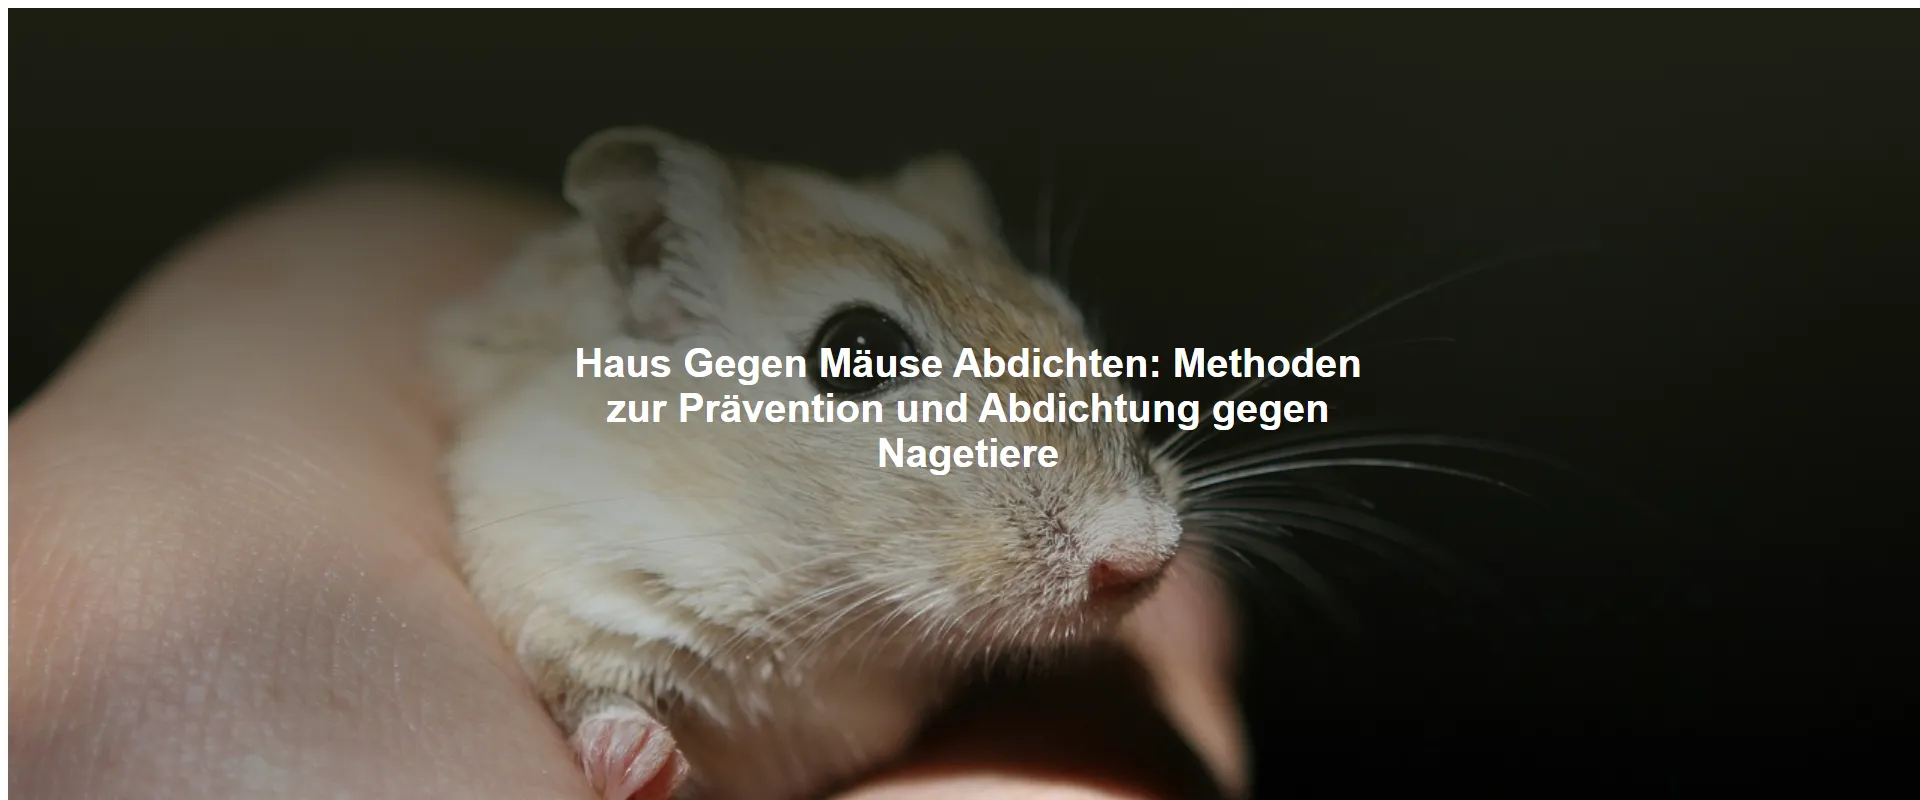 Haus Gegen Mäuse Abdichten – Methoden zur Prävention und Abdichtung gegen Nagetiere